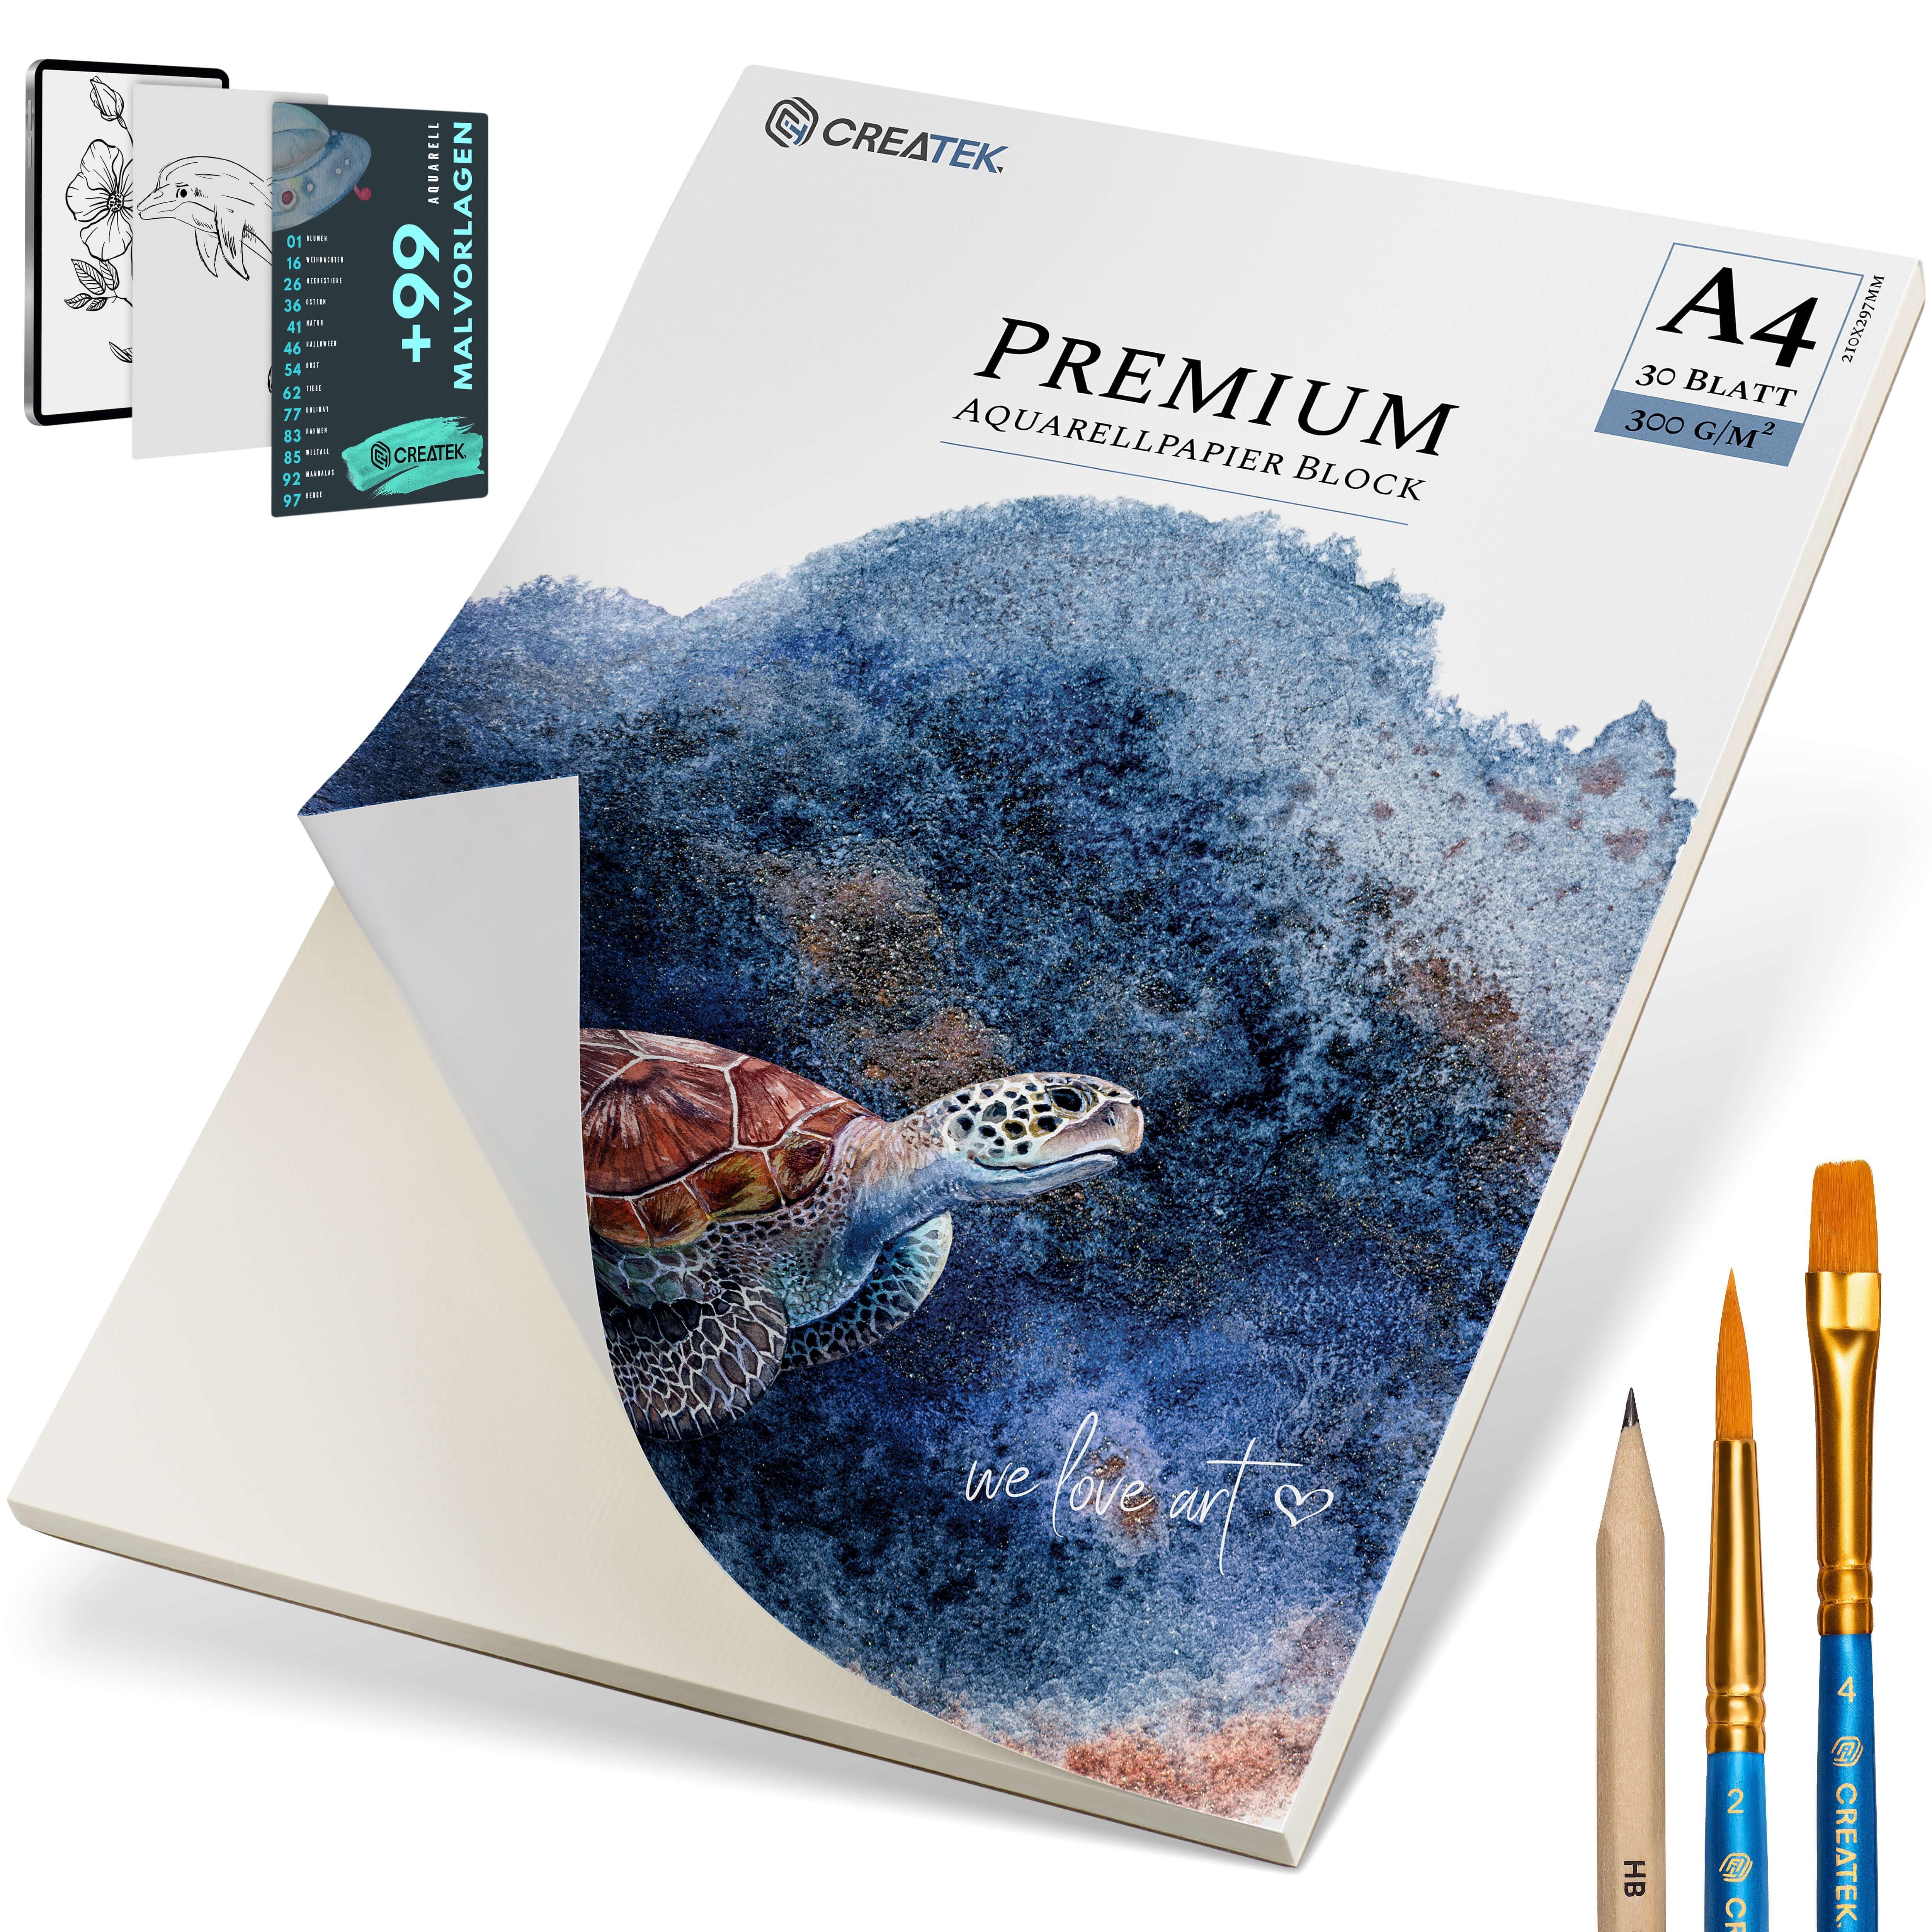 CreaTek Aquarellpapier 300g Bleistift 400 Qualität MALVORLAGEN inkl. Pinsel uvm., VIDEOKURS STUNDEN diverse 2 & Premium + Größen 